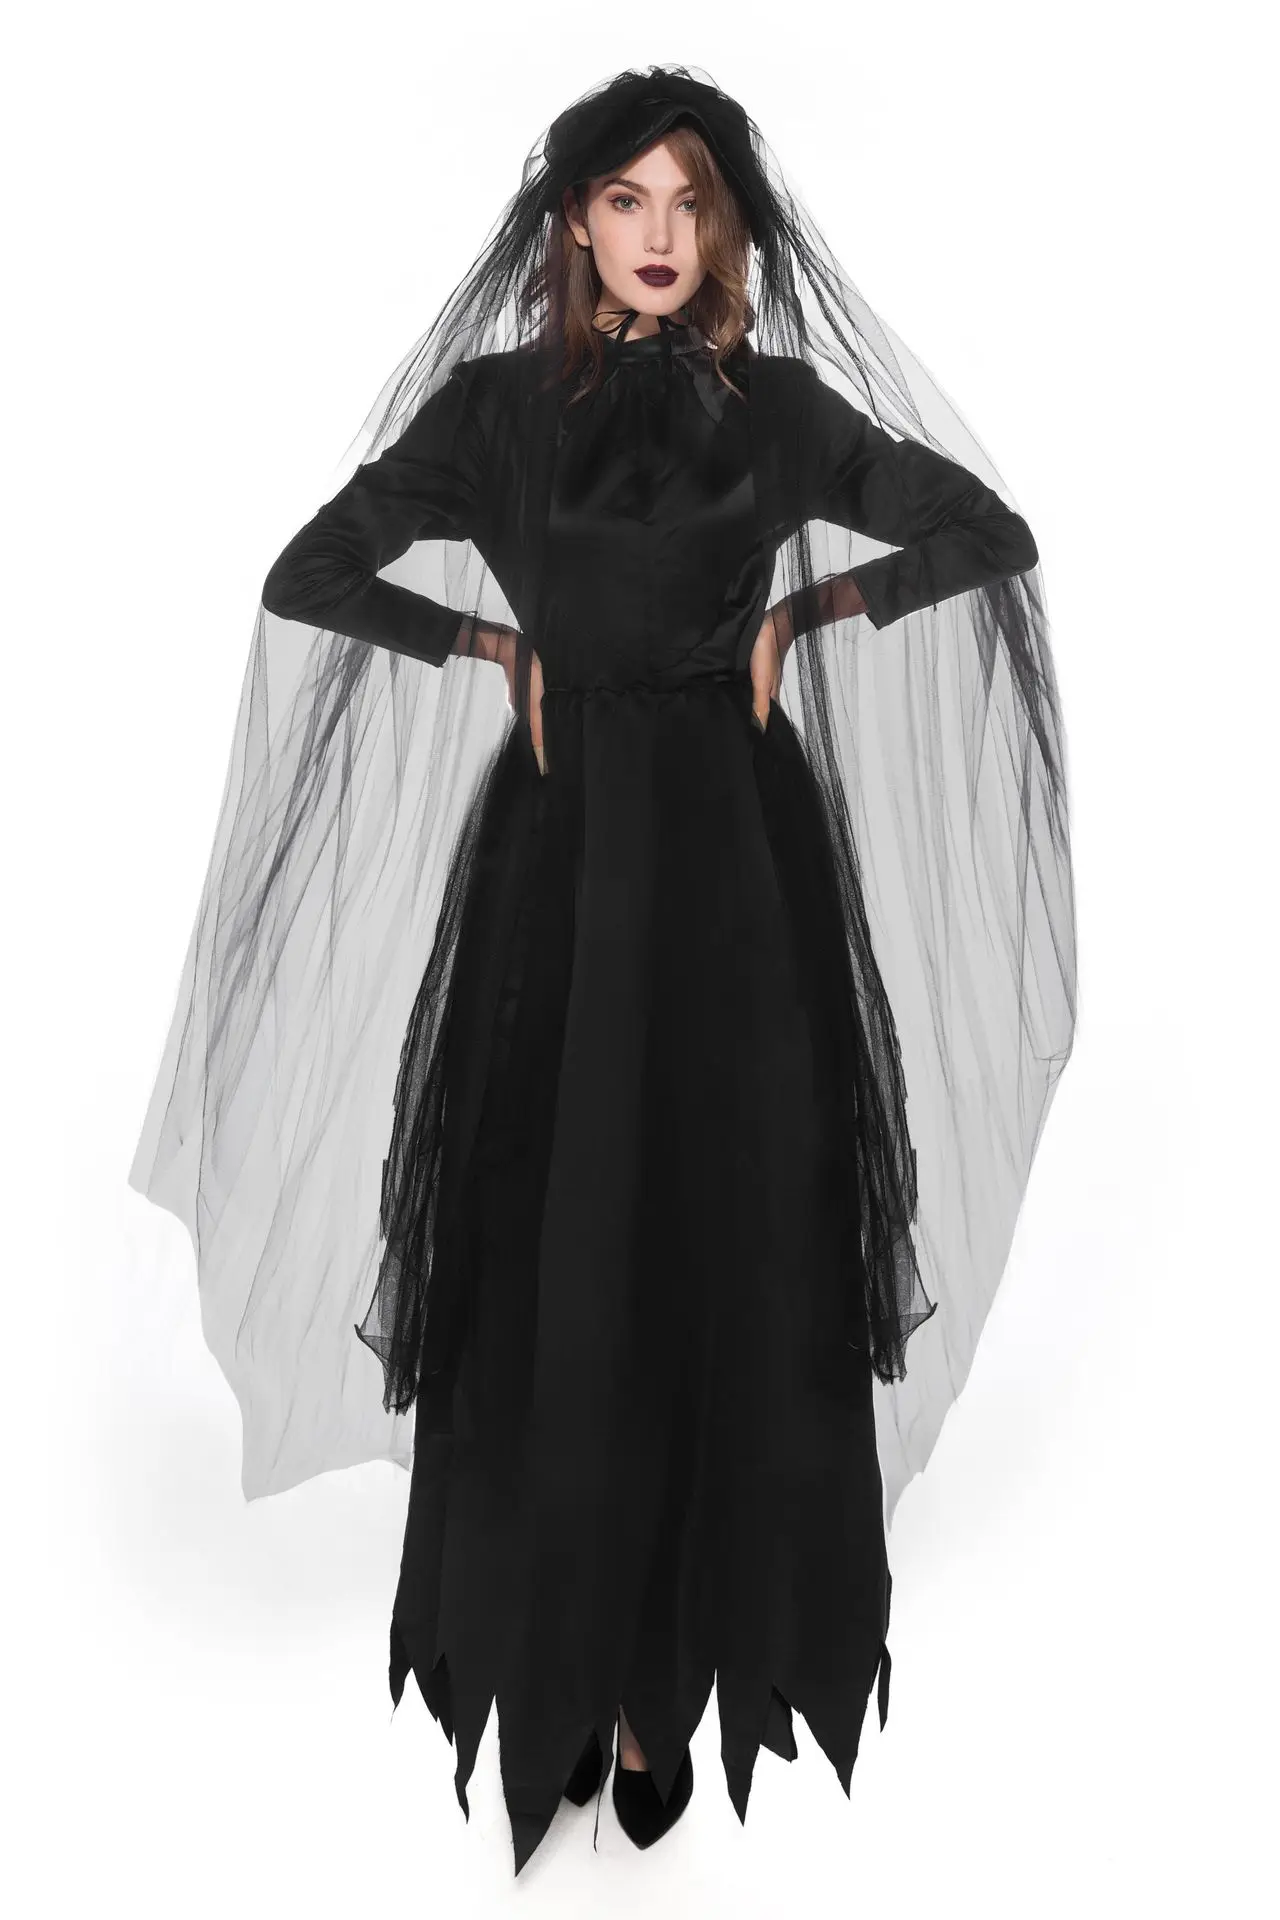 

Новинка 2020, костюмы на Хэллоуин, косплей, костюм невесты вампира, взрослый сценический костюм ведьмы для выступления, женские костюмы для ко...